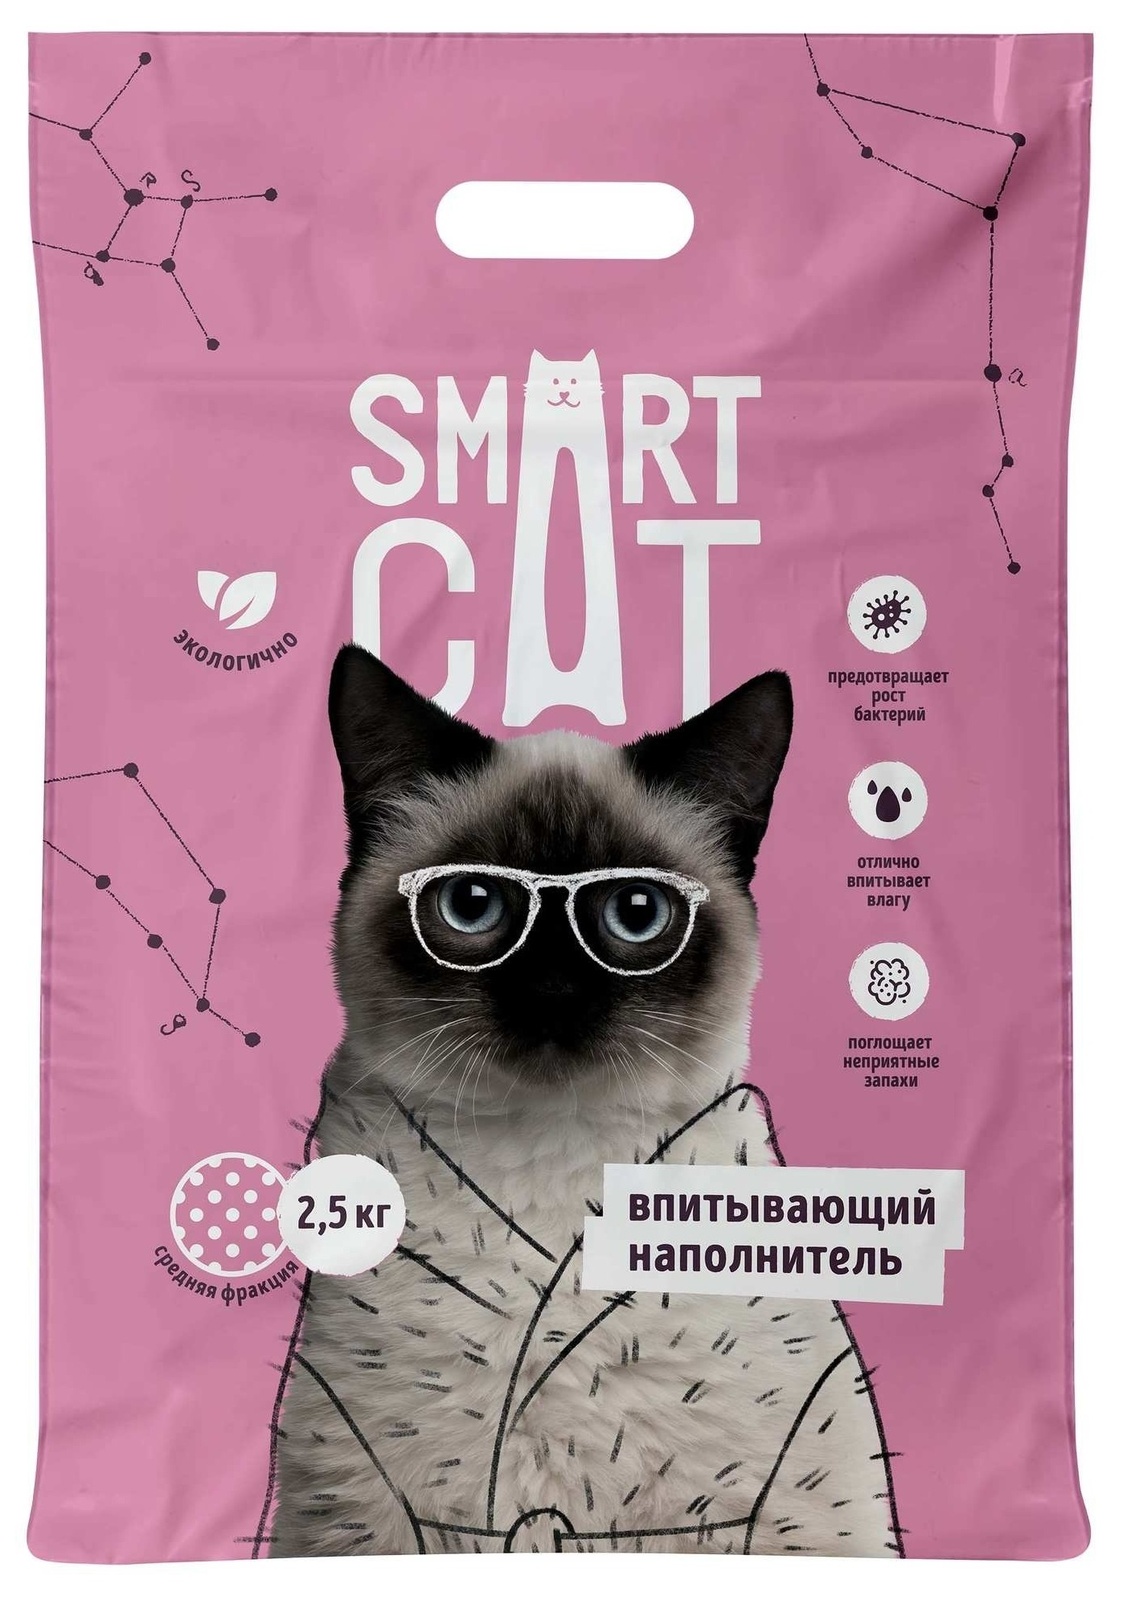 Smart Cat наполнитель Smart Cat наполнитель впитывающий наполнитель, средняя фракция (5 кг) smart cat наполнитель впитывающий наполнитель 10л 5 кг средняя фракция 66ур25 5 кг 52862 1 шт